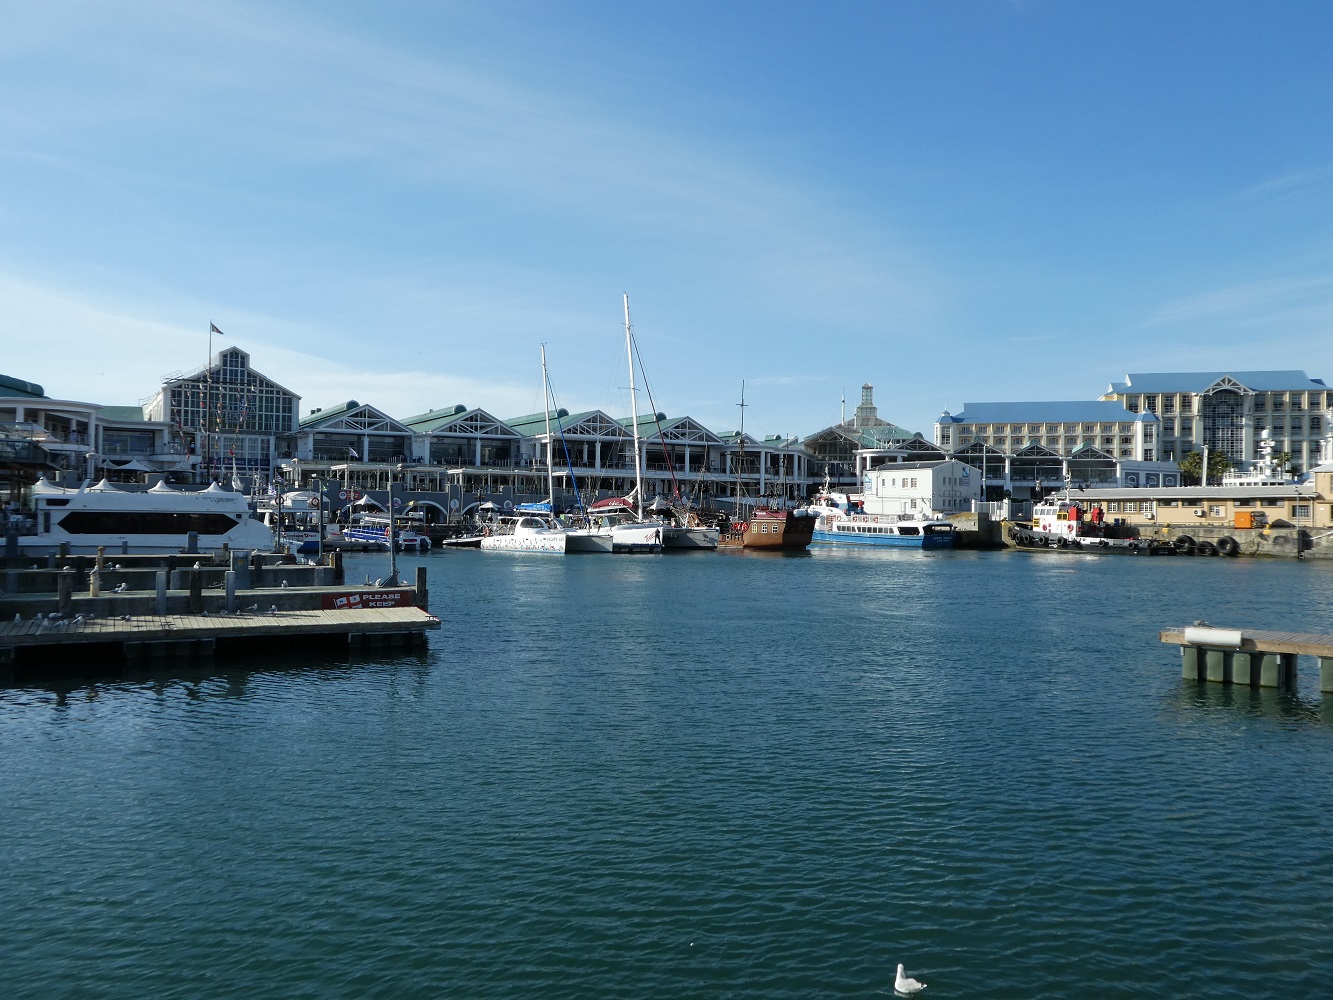 Mein Schiff Destination: Kapstadts Waterfront